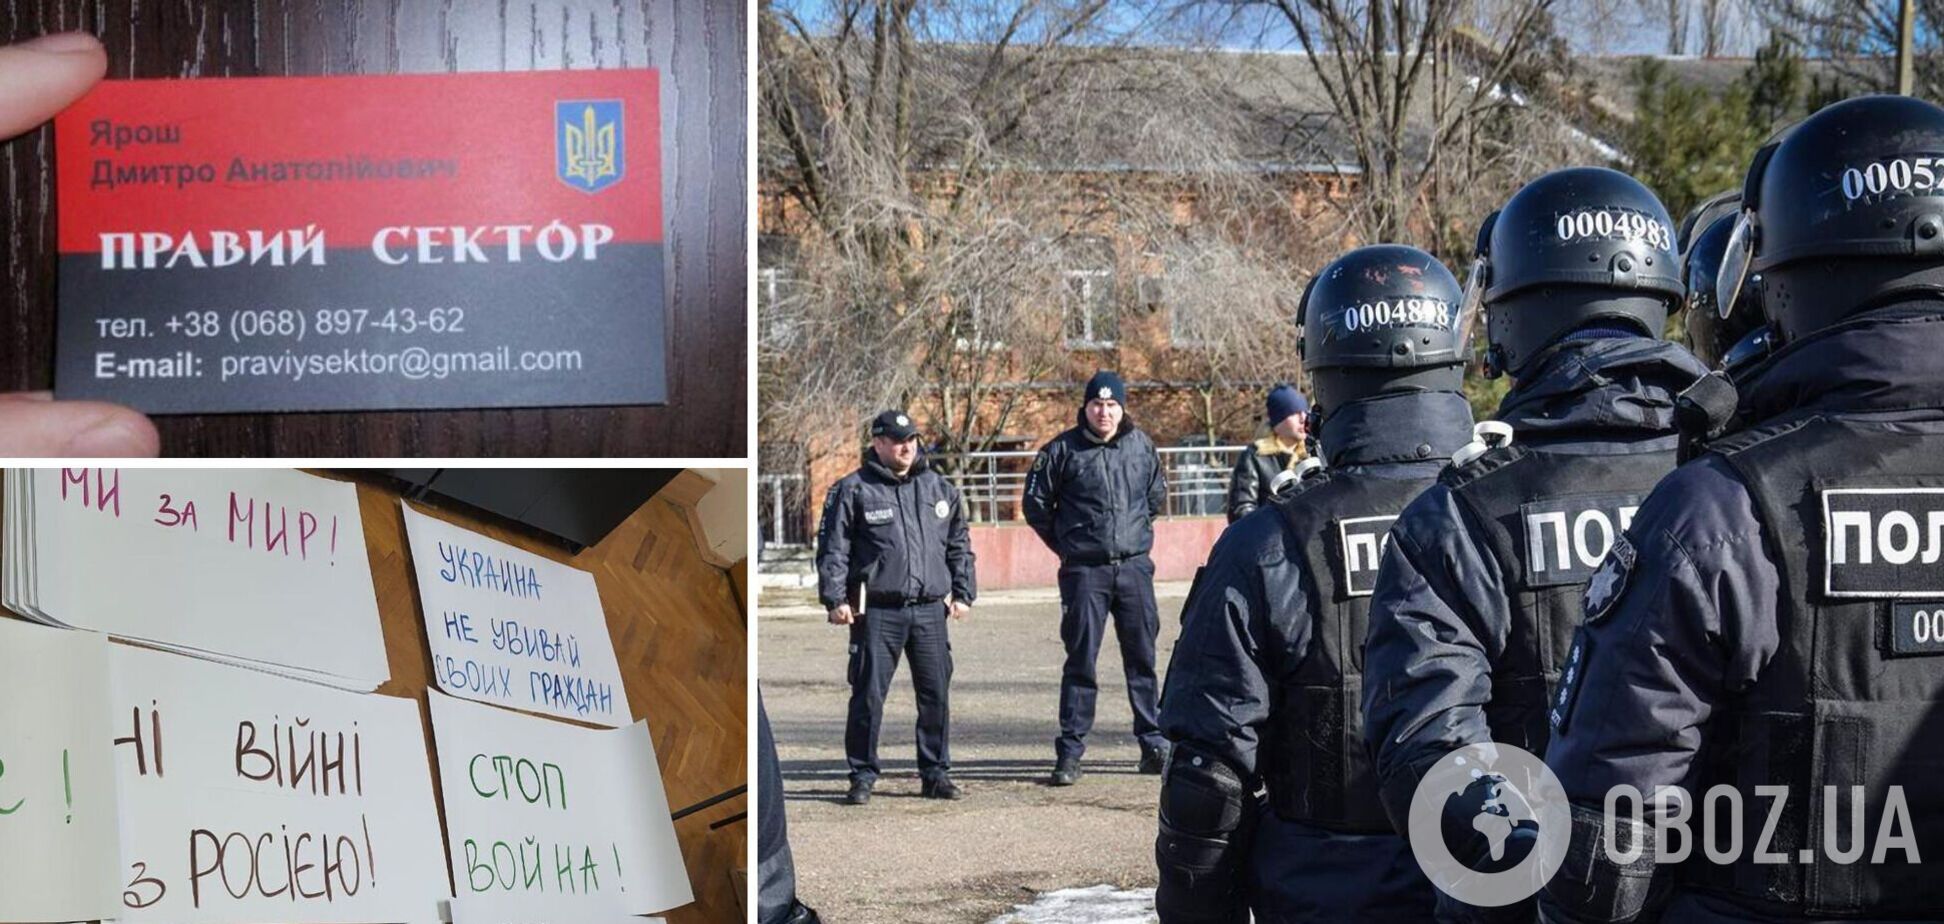 Картинка для росСМИ и 'визитки Яроша': по заказу России в Киеве готовили проплаченный митинг